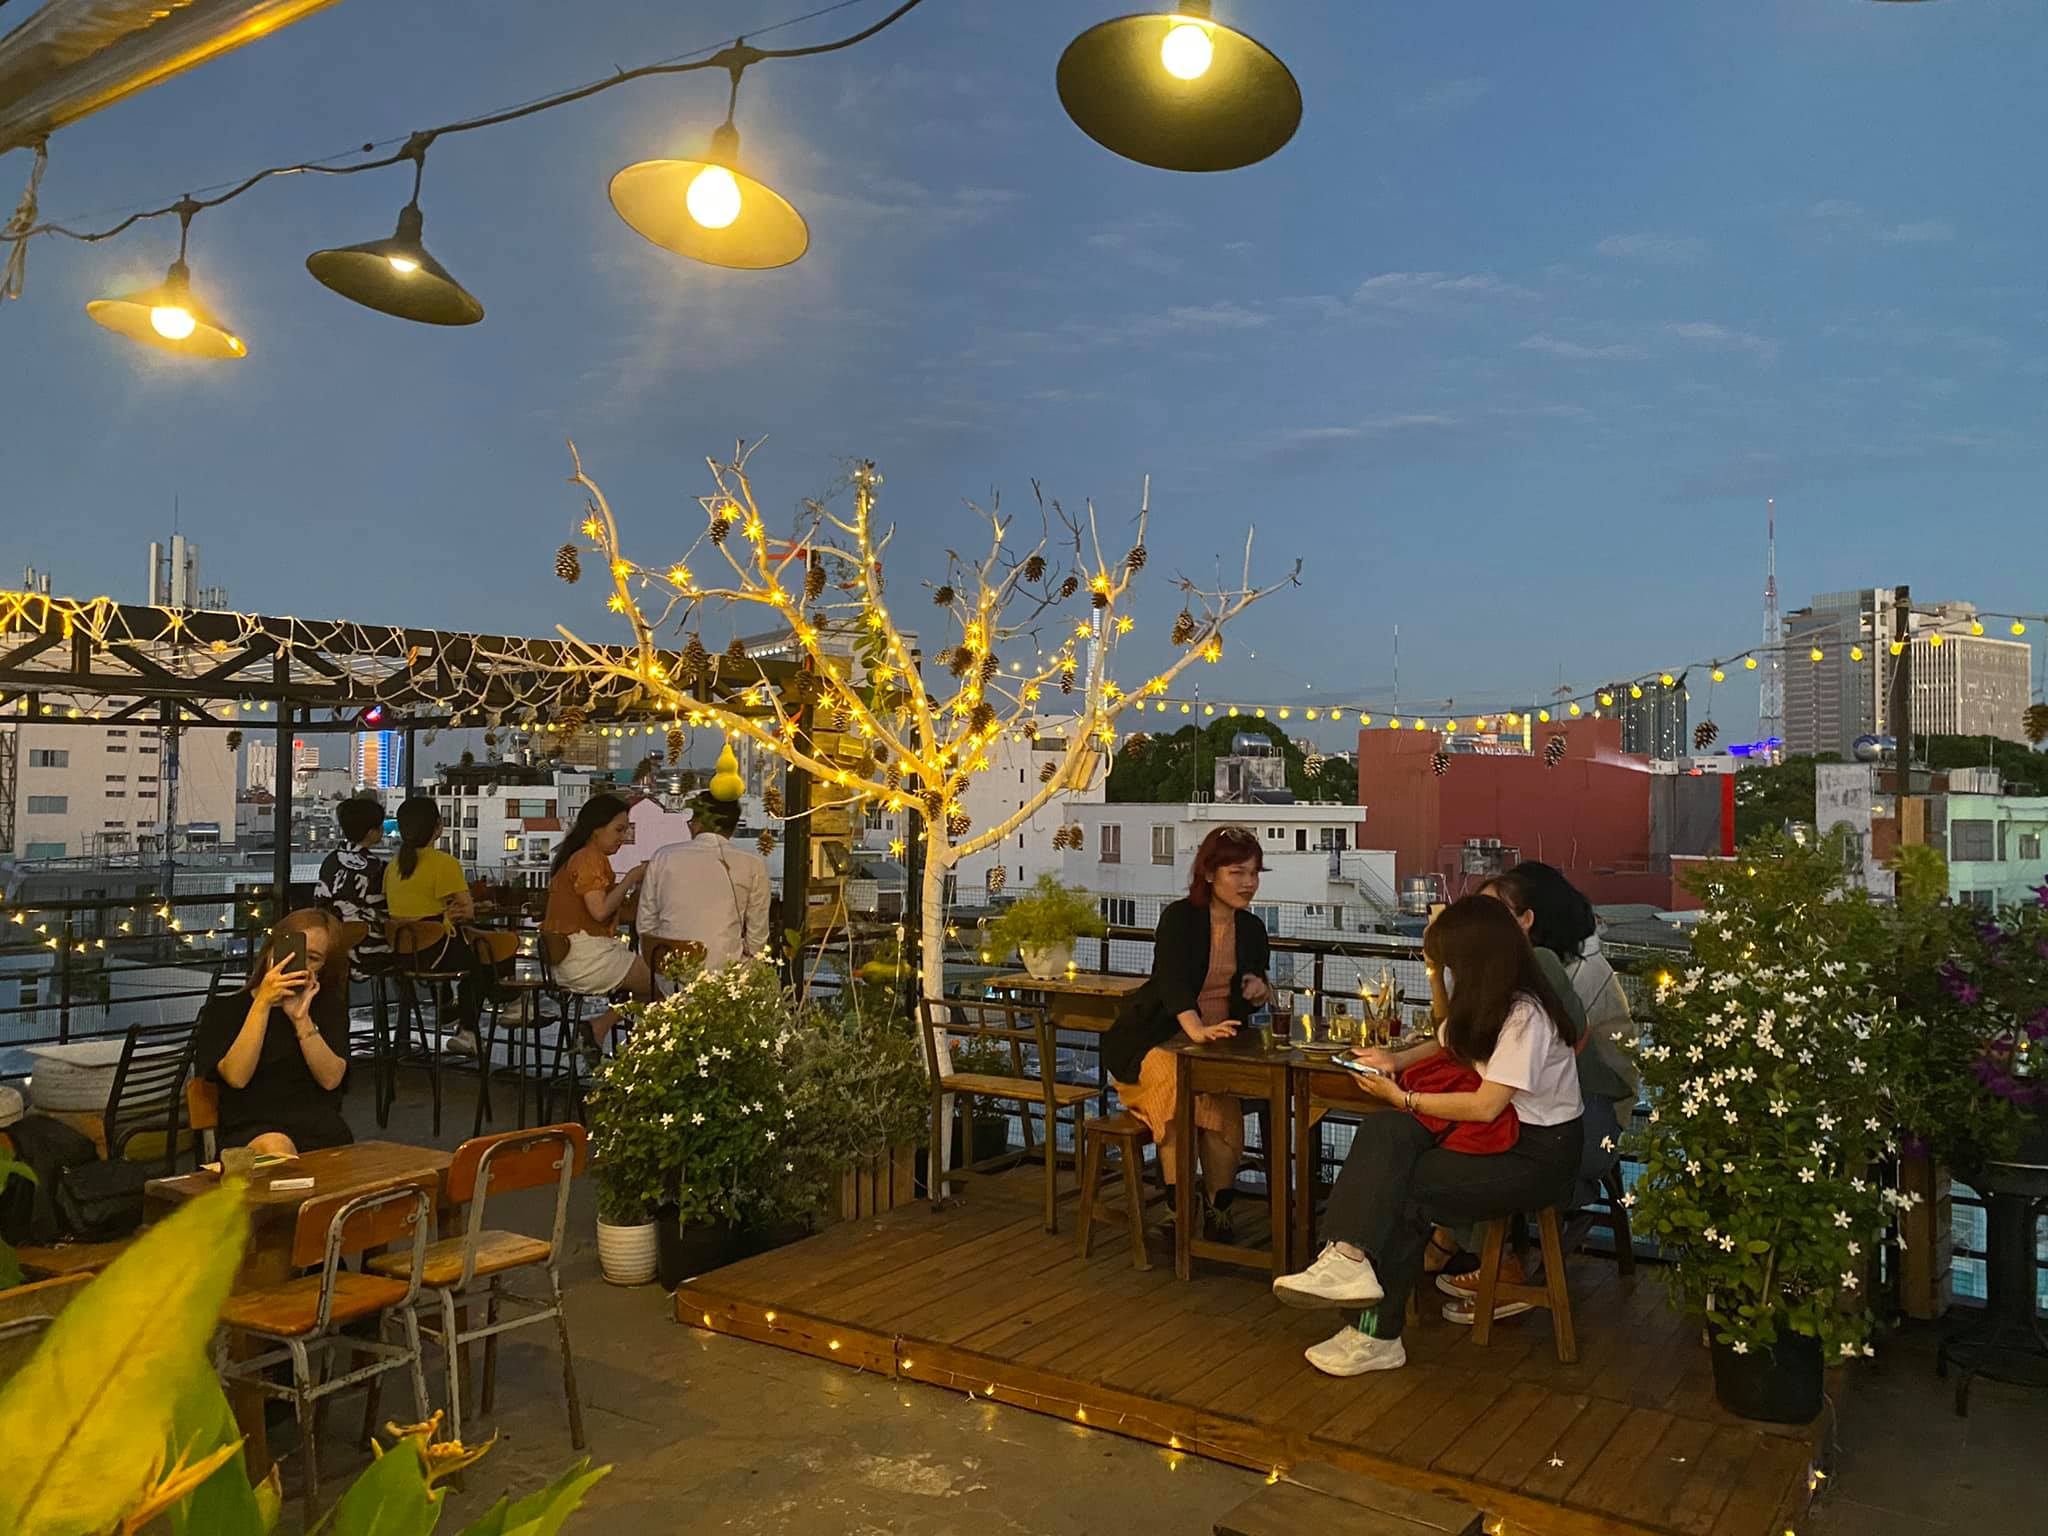 1991 Rooftop Coffee & More được xem là quán cà phê Đà Lạt giữa Sài Gòn (Nguồn: Internet)